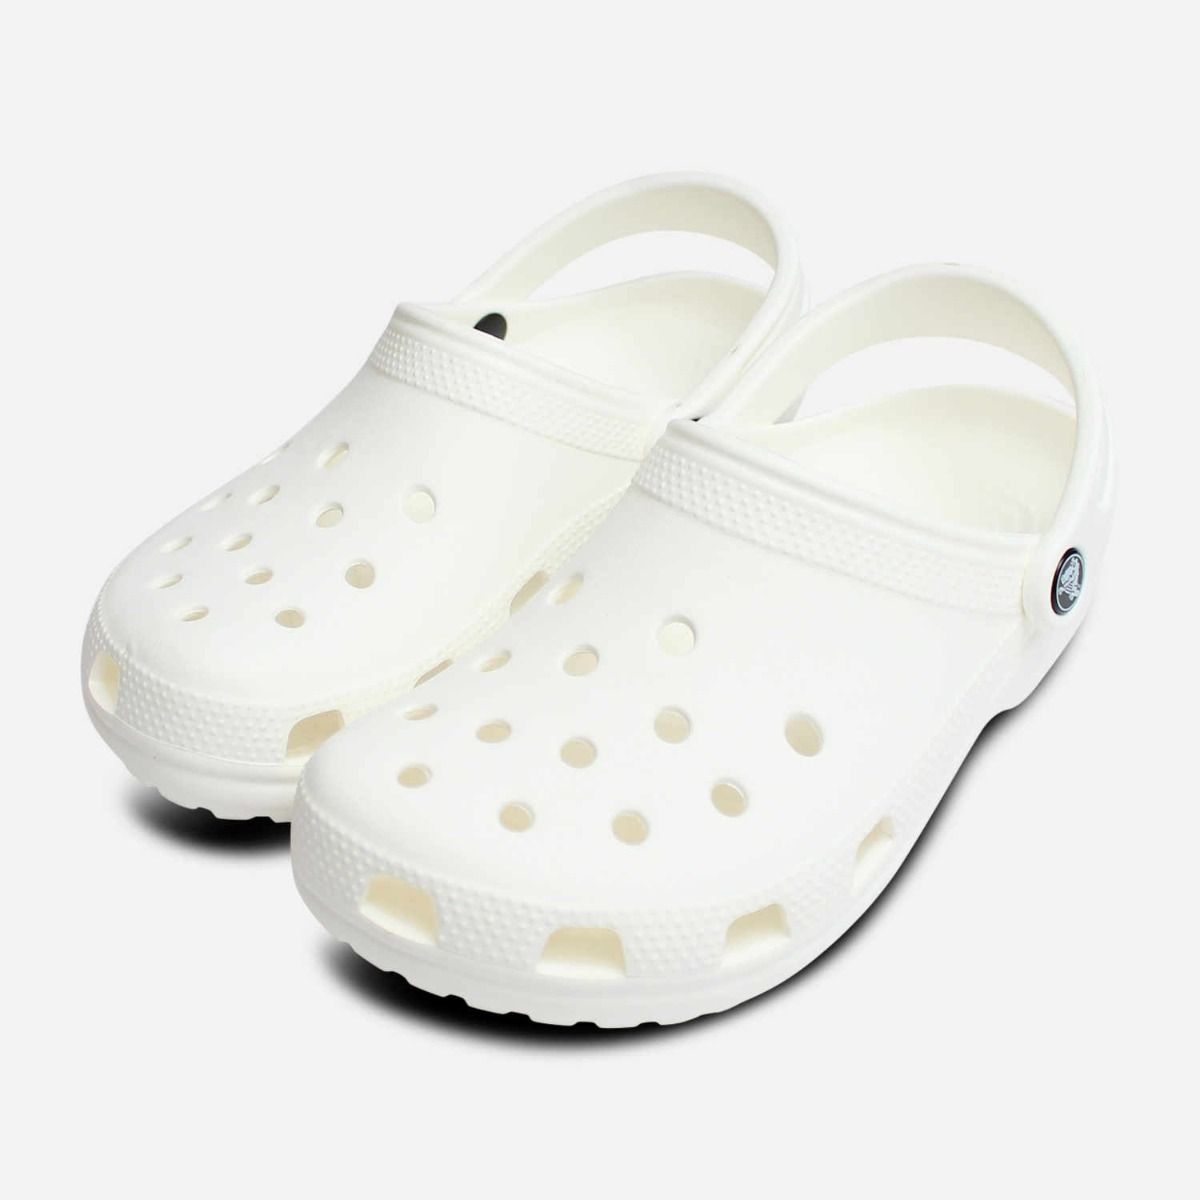 White Crocs : Discount Crocs & Skechers Shoes Online ...